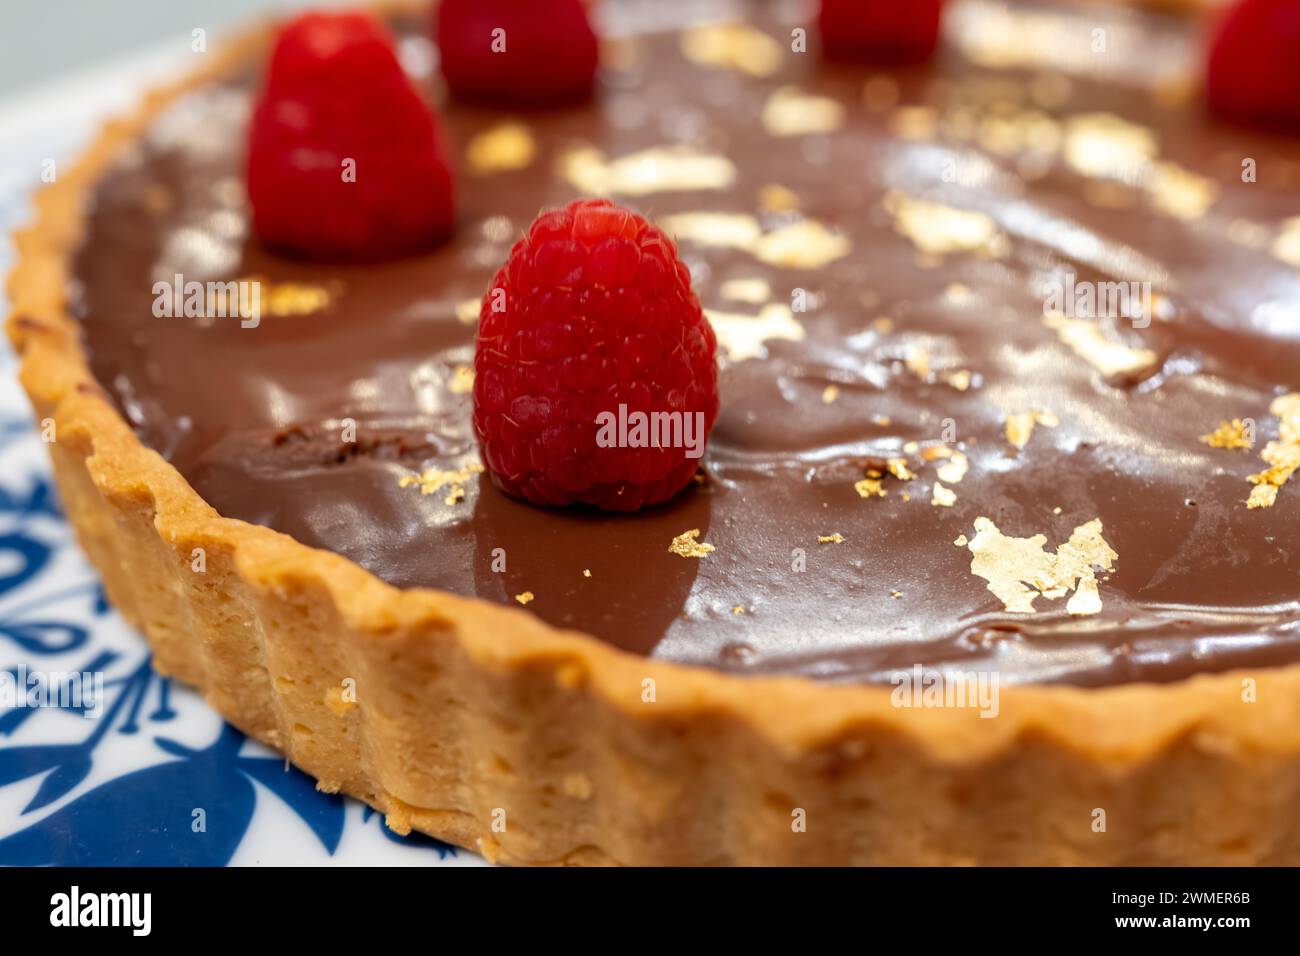 Torta al cioccolato con marmellata di albicocche decorata con lamponi freschi e targhe d'oro 24 carati su lavagna bianca blu Foto Stock